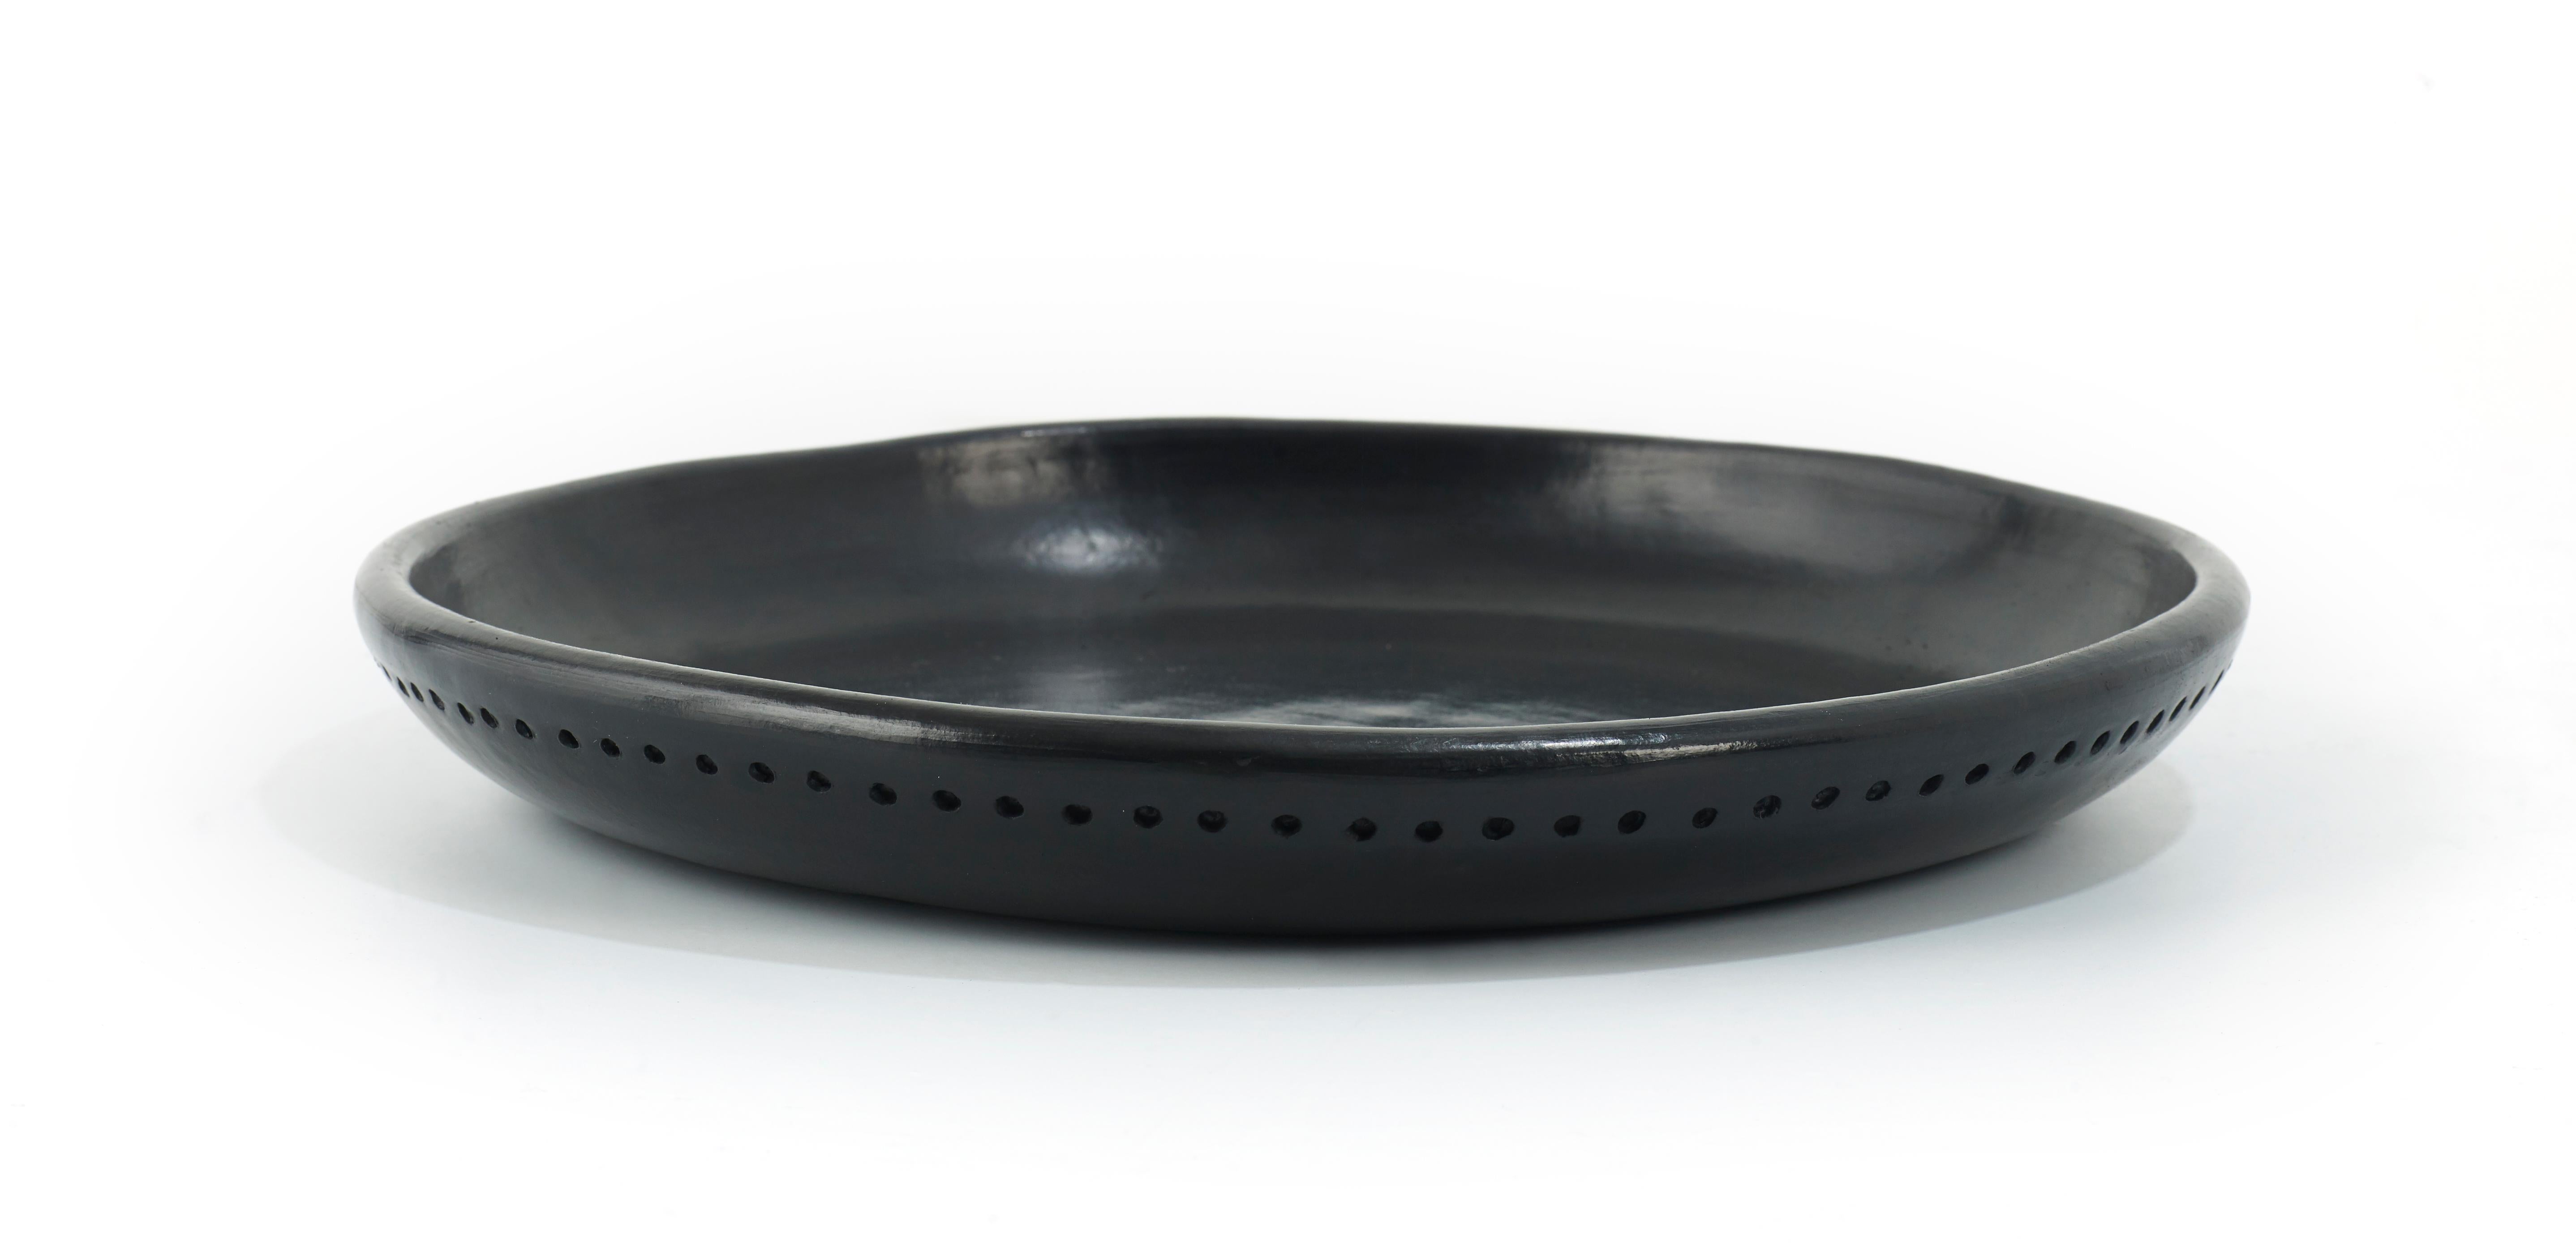 Teller 5 Schüssel Barro dining von Sebastian Herkner
MATERIALIEN: Hitzebeständige schwarze Keramik. 
Technik: Glasiert. Im Ofen gegart und mit Halbedelsteinen poliert. 
Abmessungen: Durchmesser 29 cm x H 3 cm 
Auch in anderen Größen